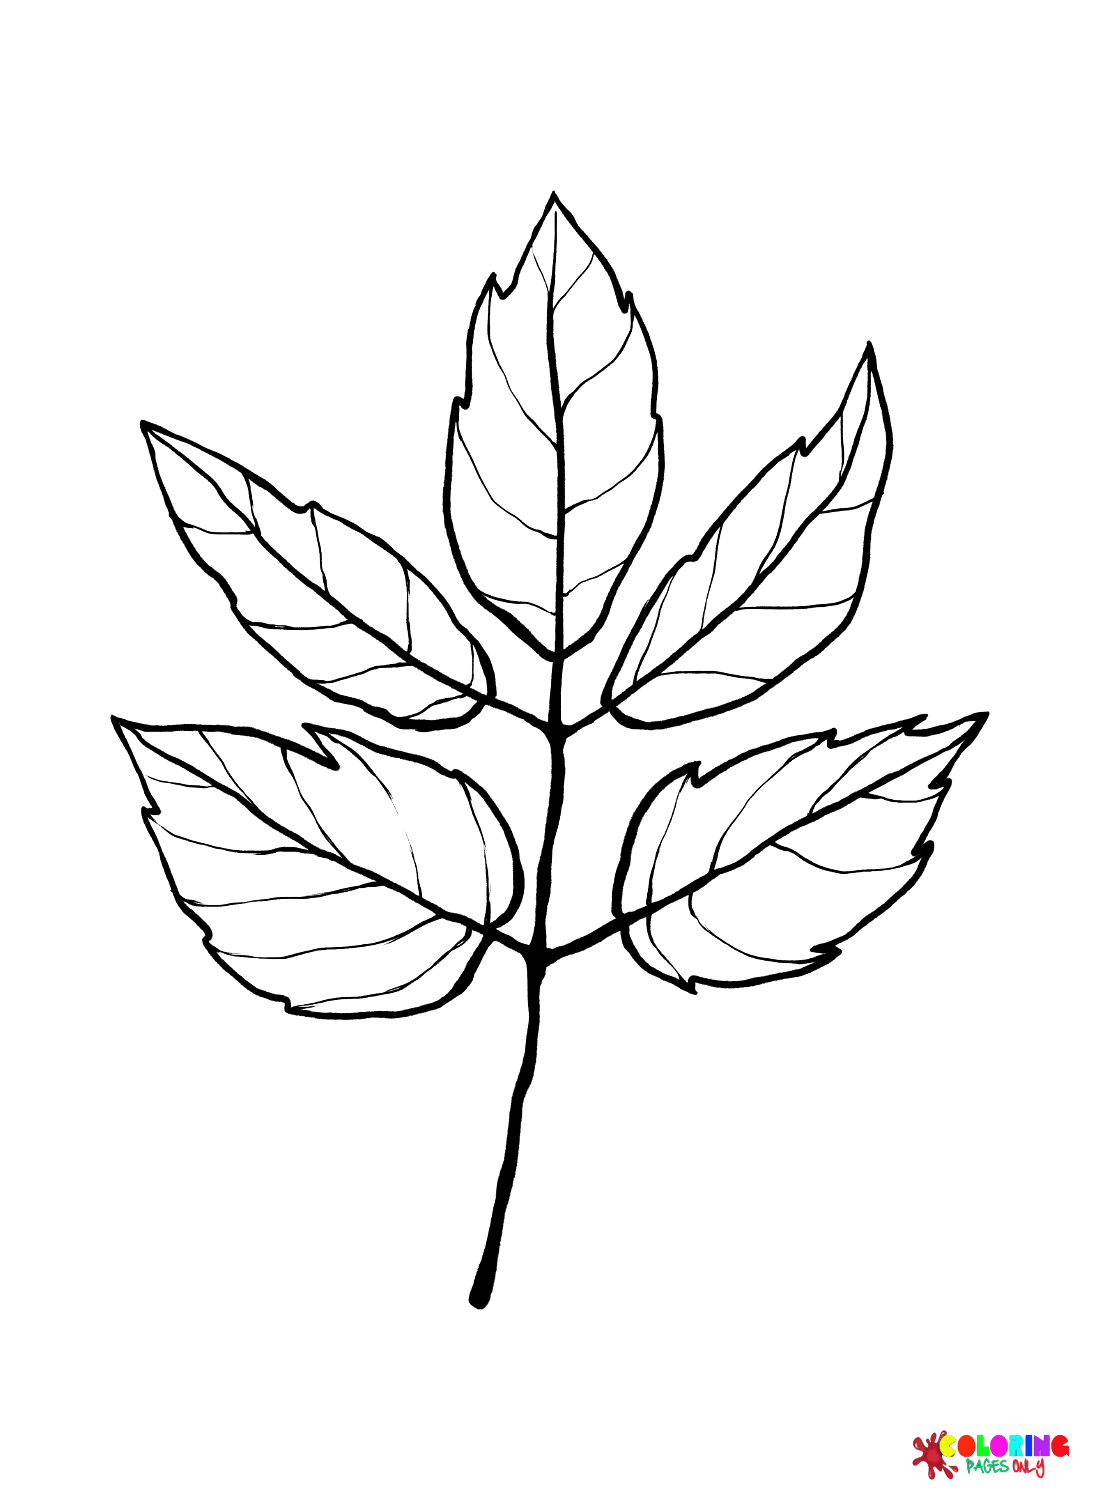 Página para colorir de folhas de sabugueiro de caixa